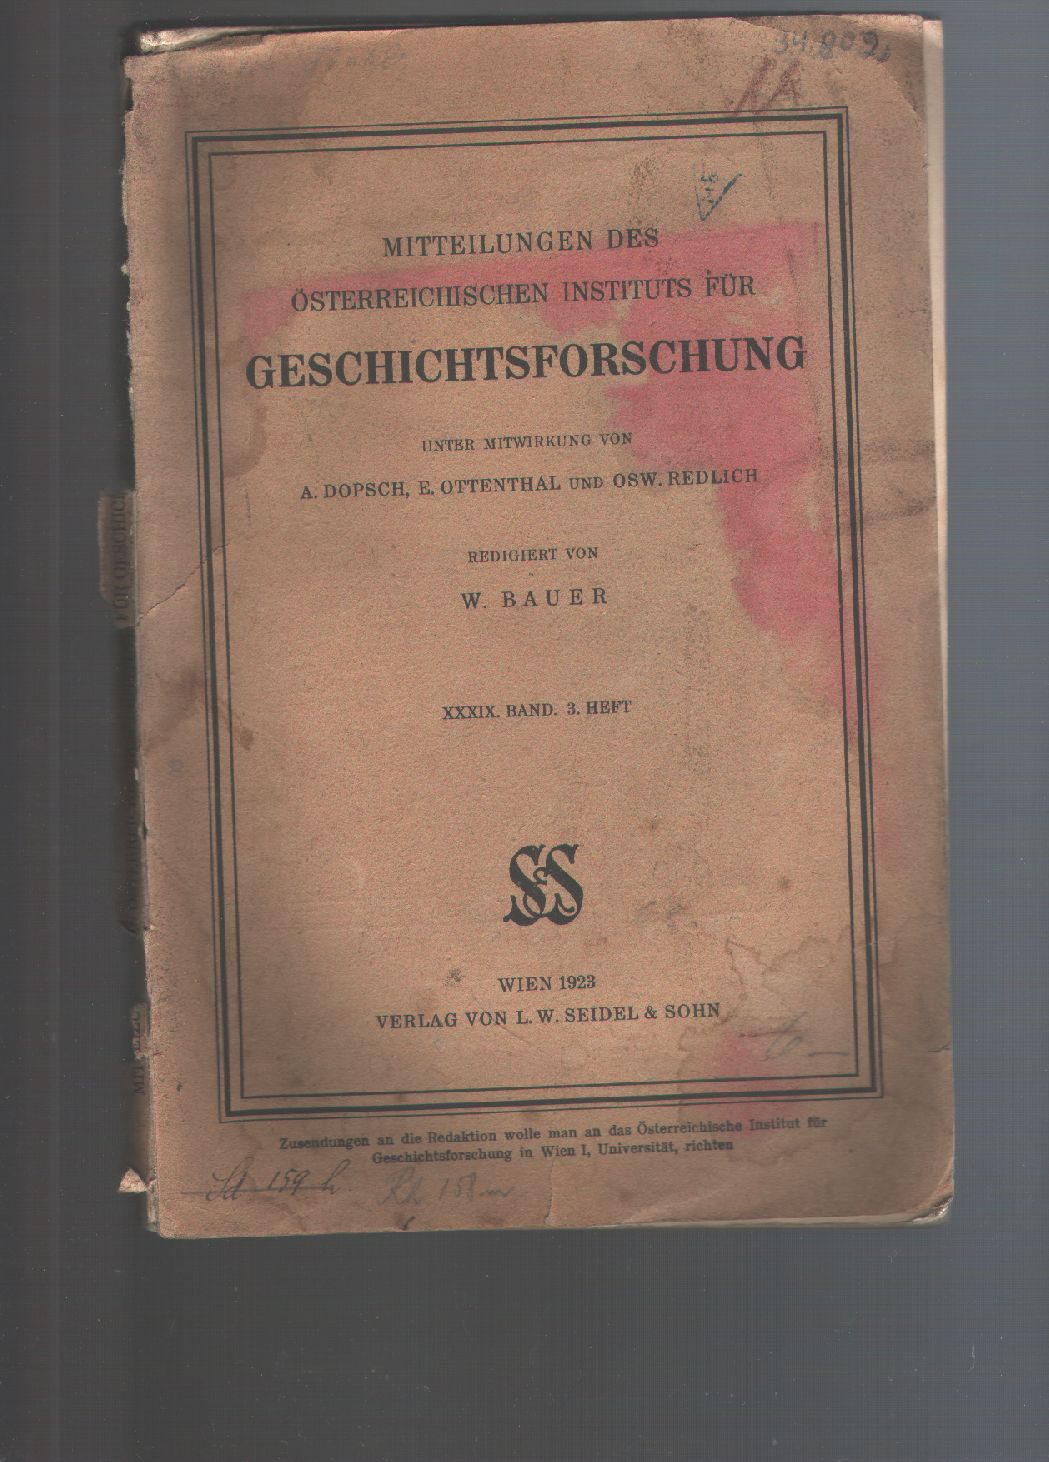 W. Bauer  Mitteilungen des Österreichischen Instituts für Geschichtsforschung 39 Band 3. Heft 